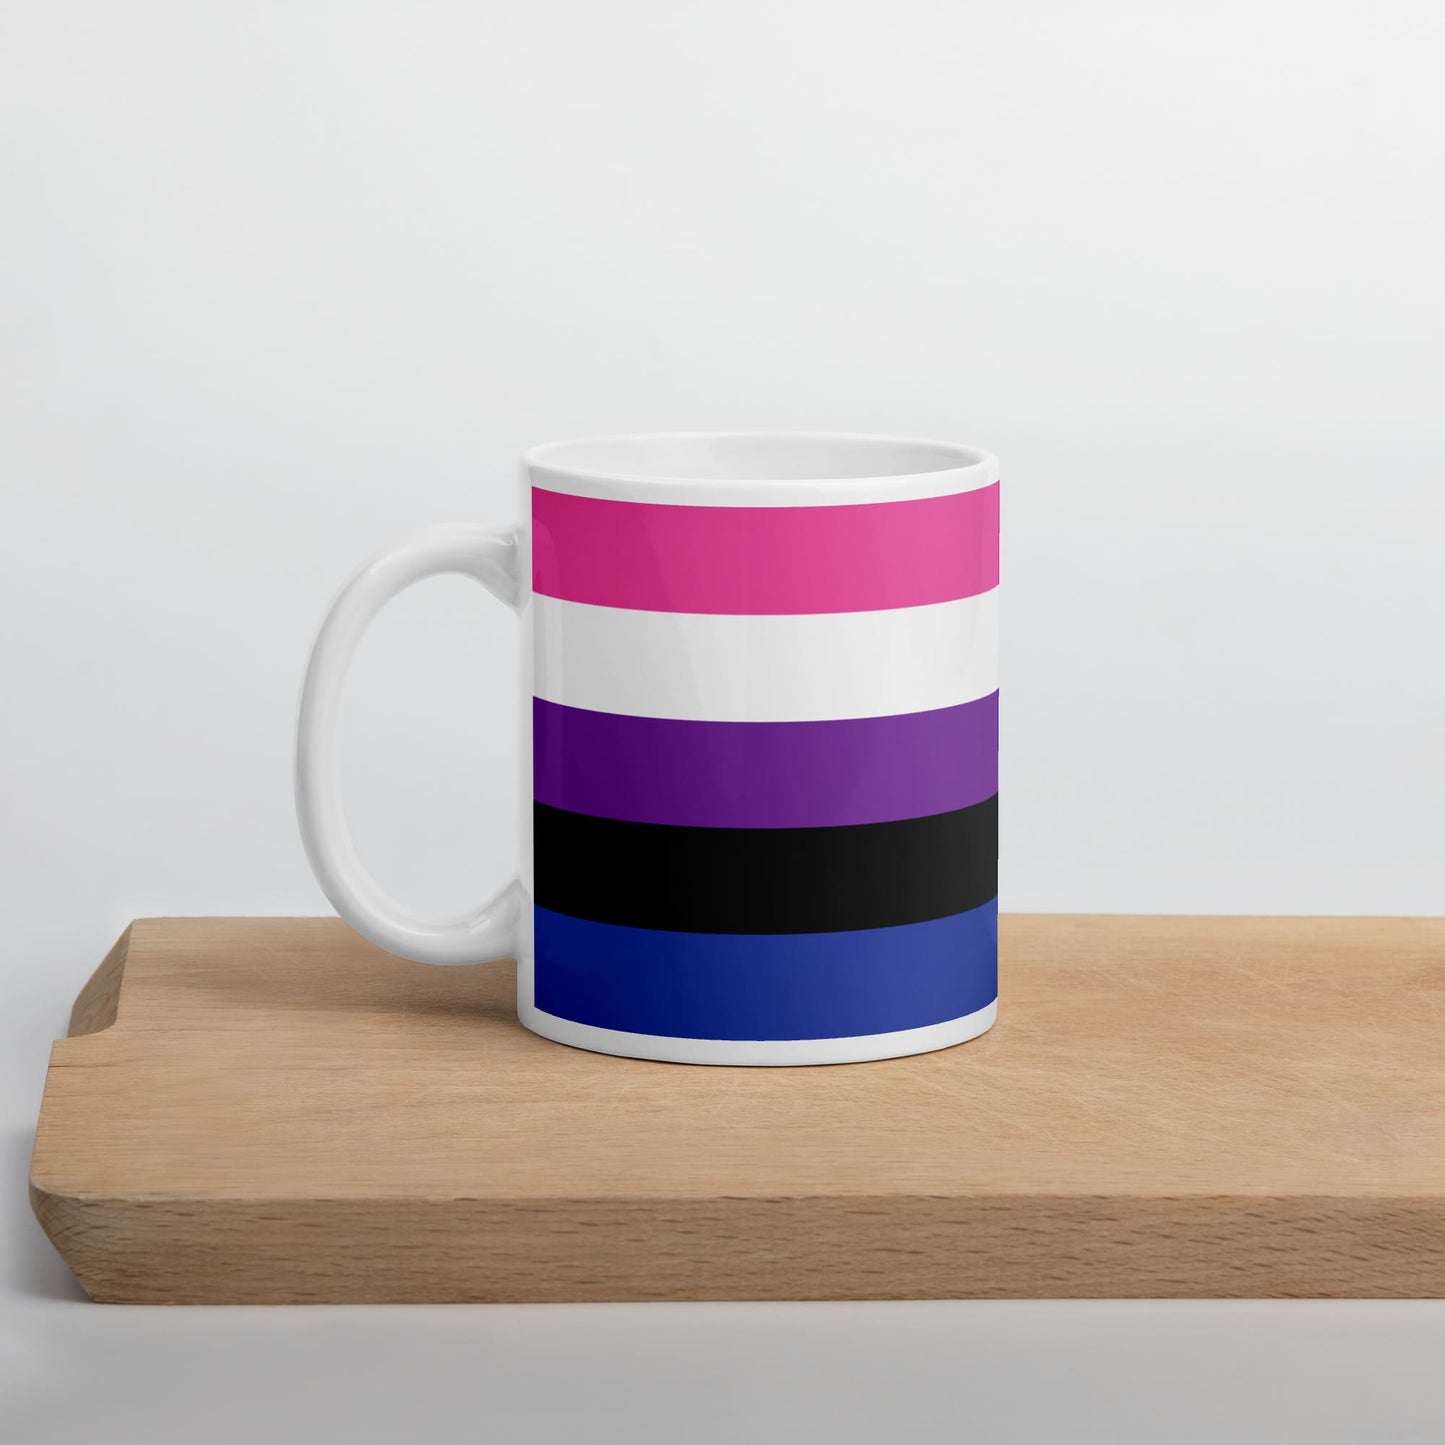 genderfluid coffee mug on table